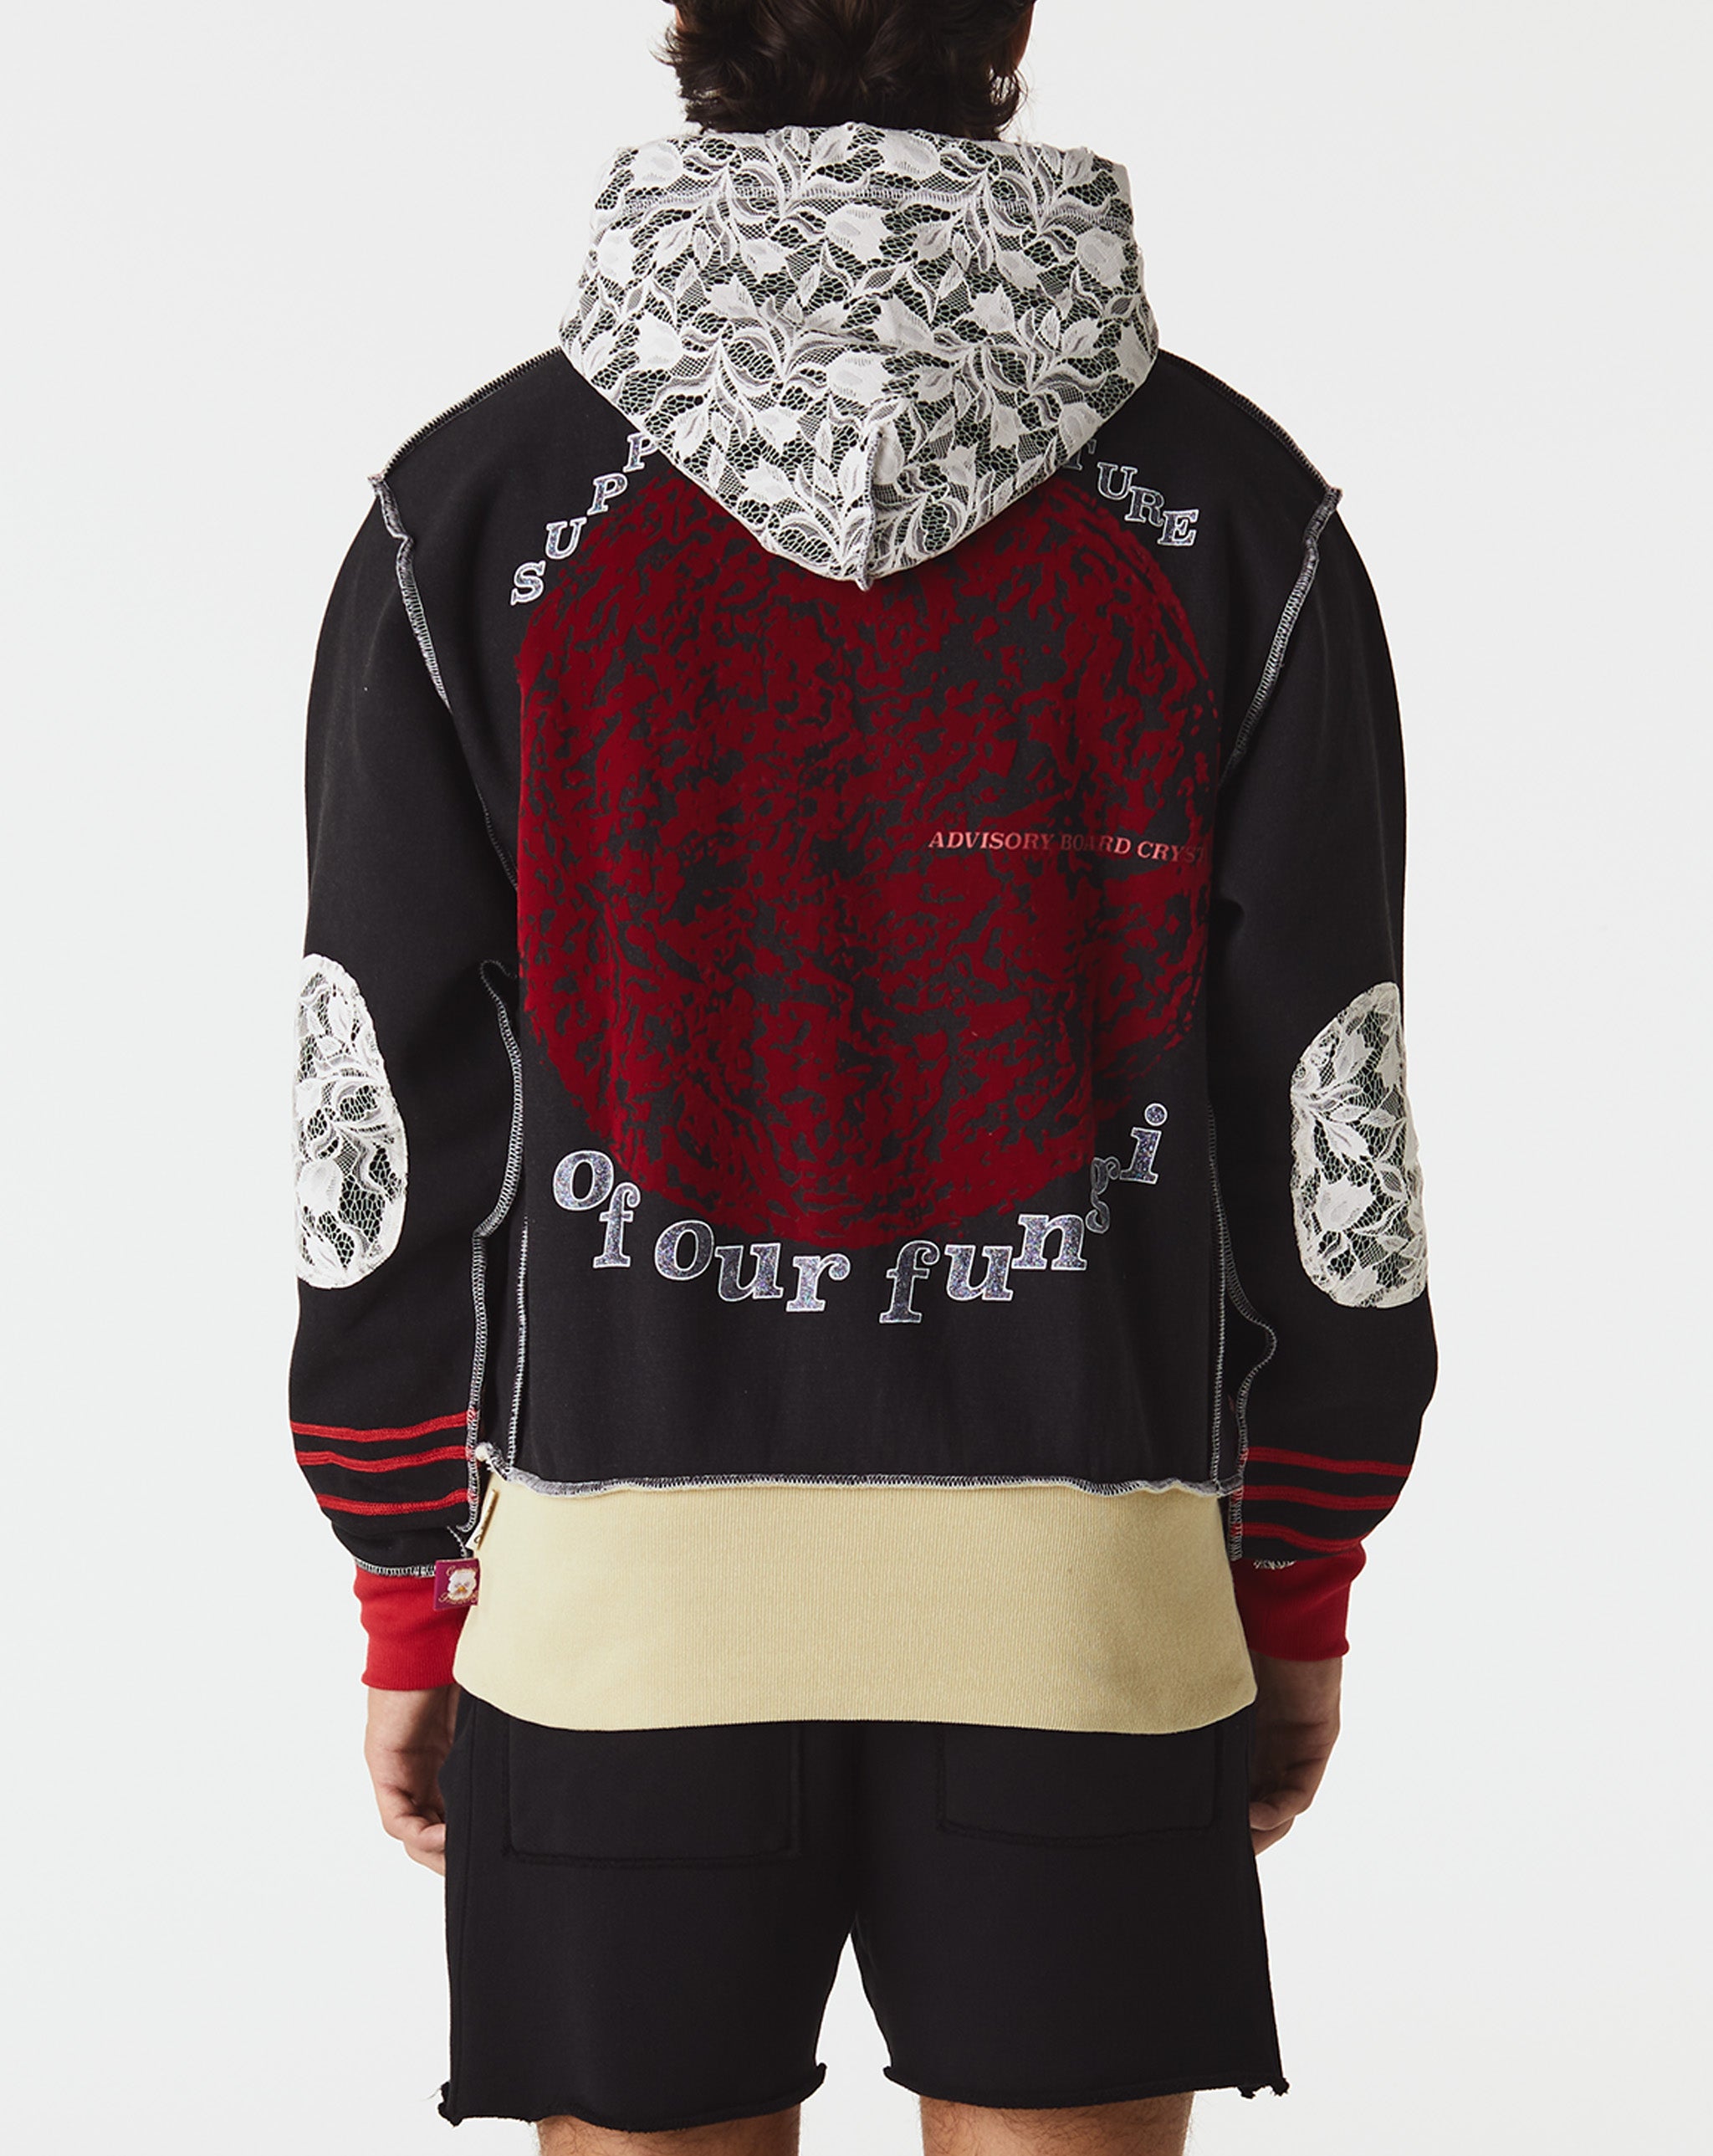 Herd Mentality T-Shirt Rangoli Hoodie  - Cheap Urlfreeze Jordan outlet